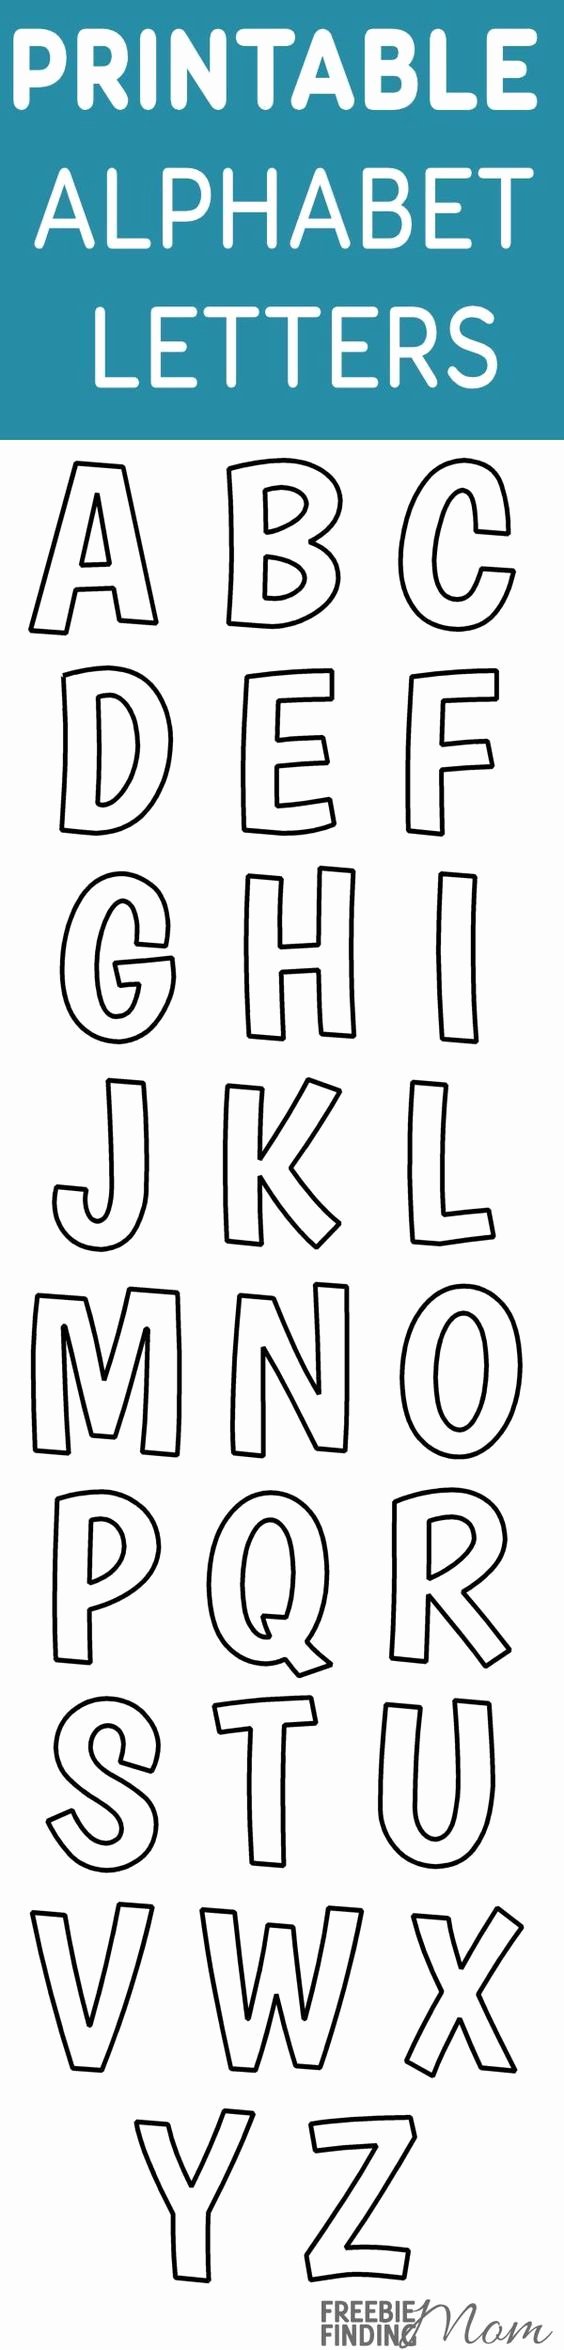 Printable Bubble Letters Font Best Of Best 25 Alphabet Stencils Ideas On Pinterest